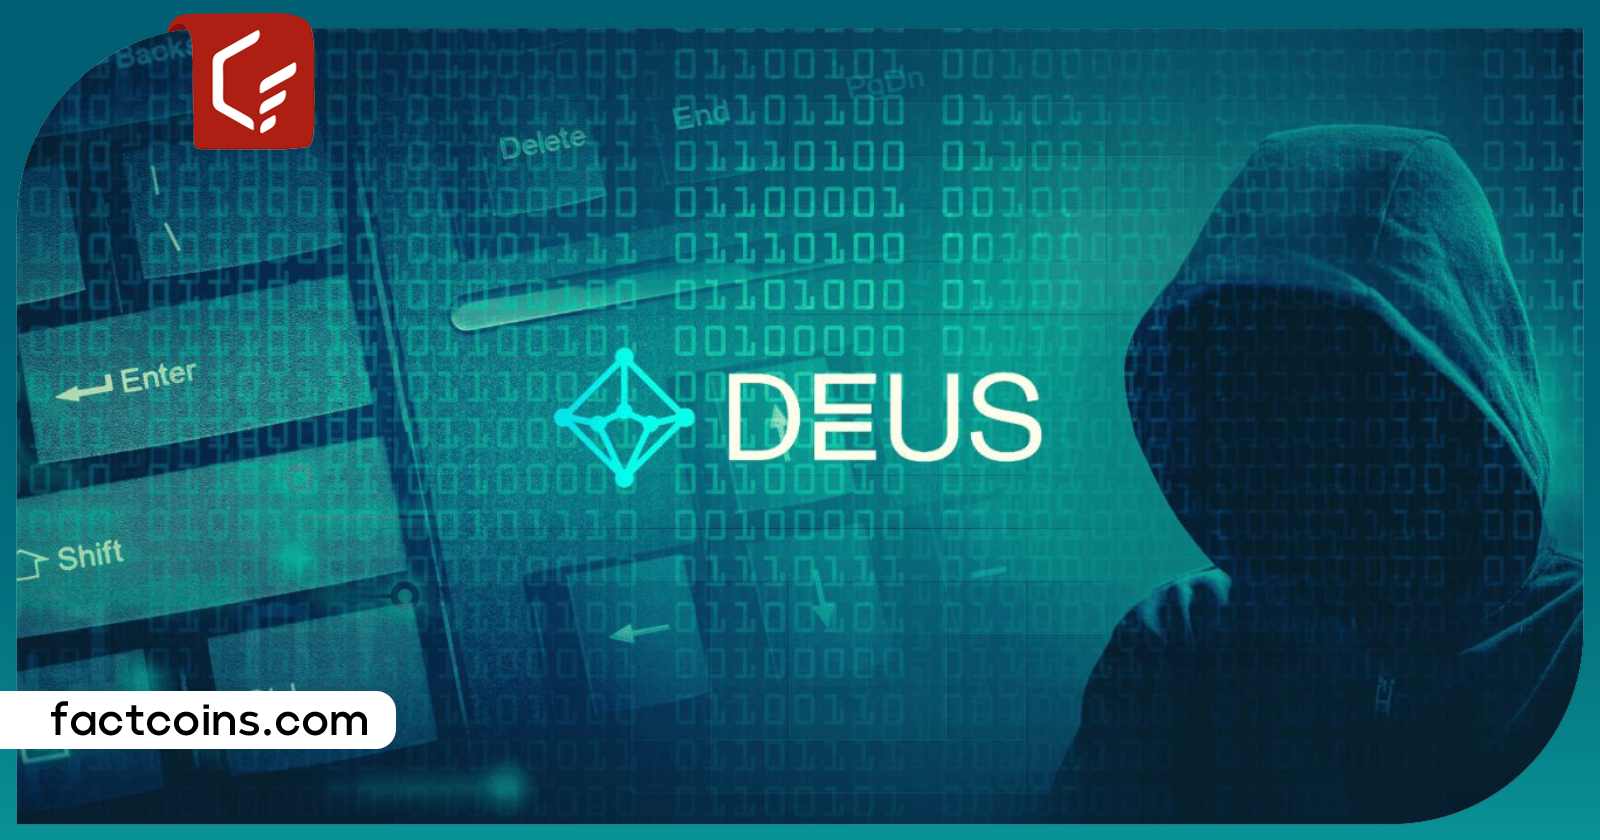 حمله هکرها به پروتکل Deus فایننس؛ ۶ میلیون دلار به سرقت رفت